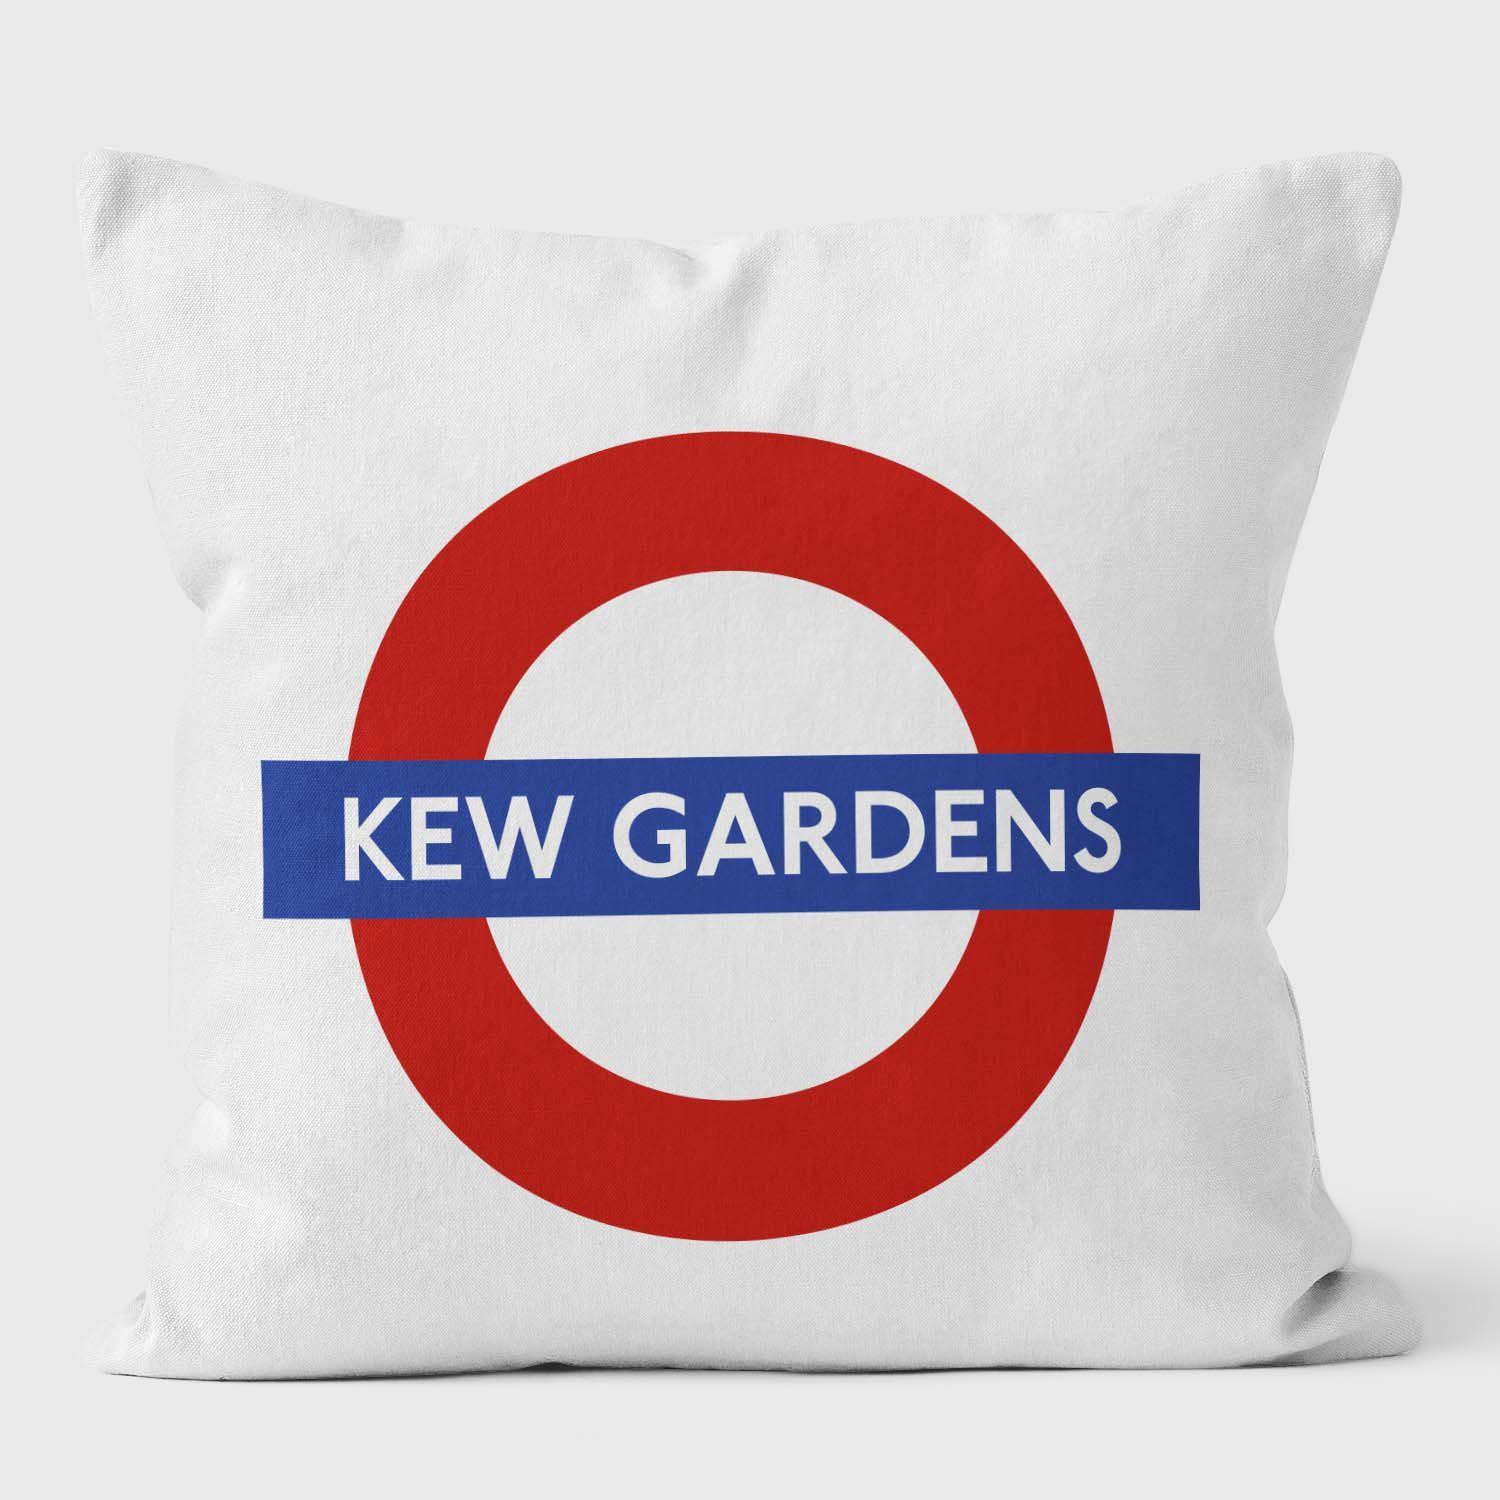 Kew Gardens London Underground Tube Station Roundel Cushion - Handmade Cushions UK - WeLoveCushions